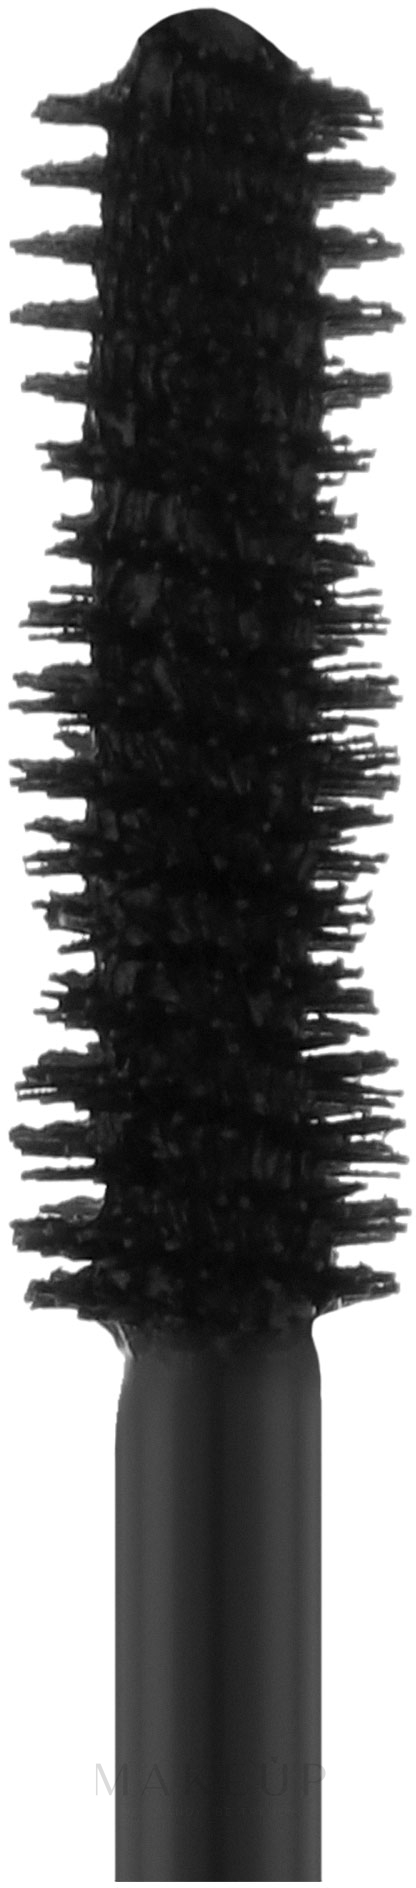 Wimperntusche mit Künstliche-Wimpern-Effekt - Diego Dalla Palma Ciglione Lash Booster Mascara — Bild 111 - Black